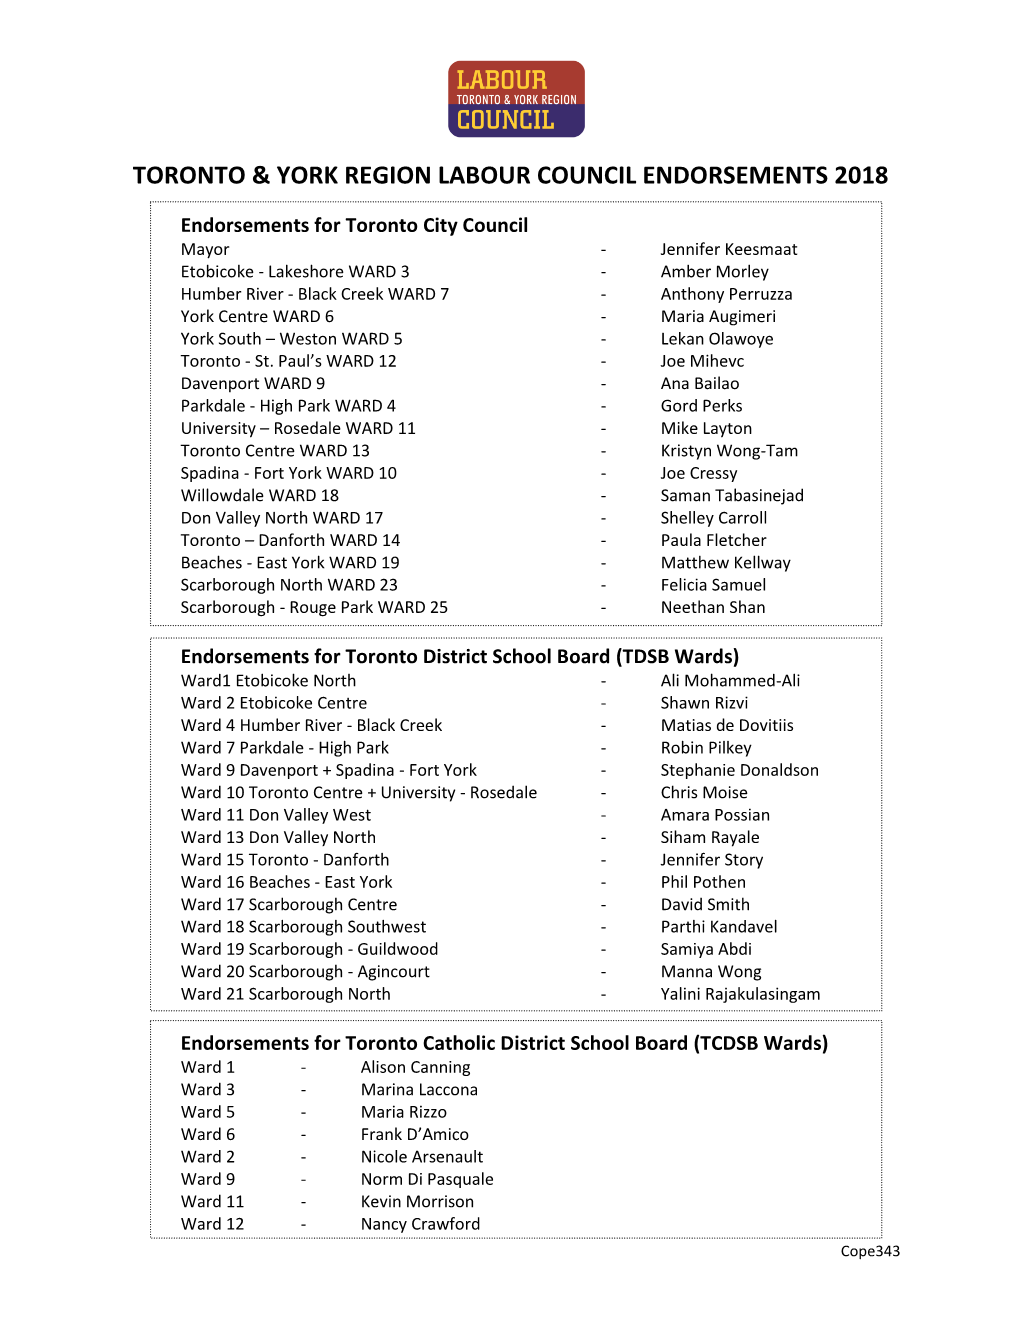 Toronto & York Region Labour Council Endorsements 2018